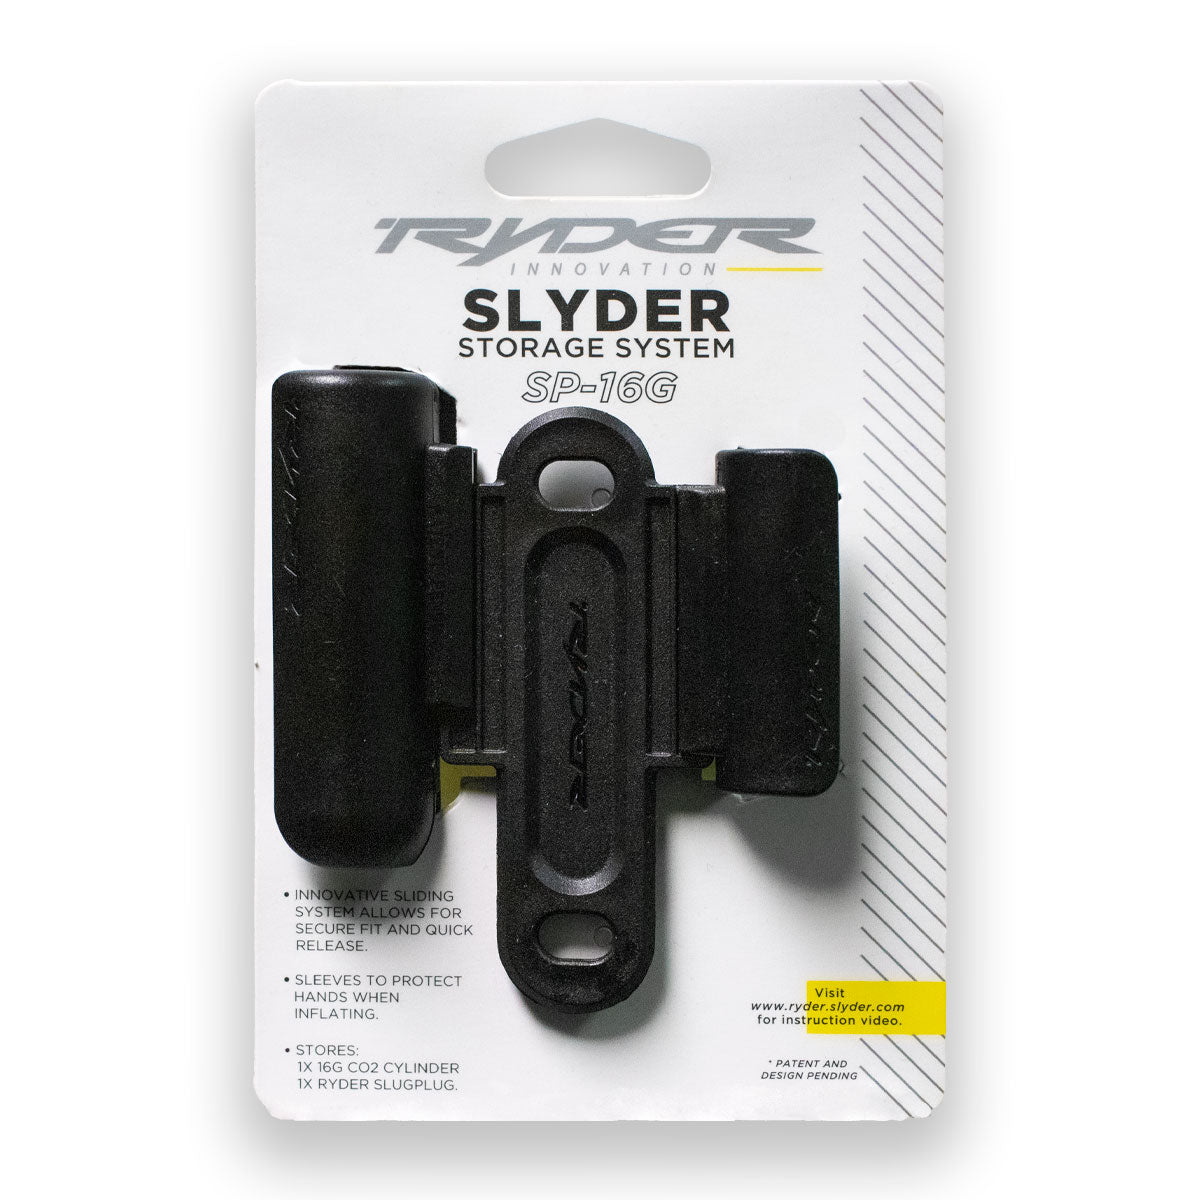 Stores 1x16G CO2 Cylinder & 1x Ryder Slugplug Ryder Slyder Storage System 